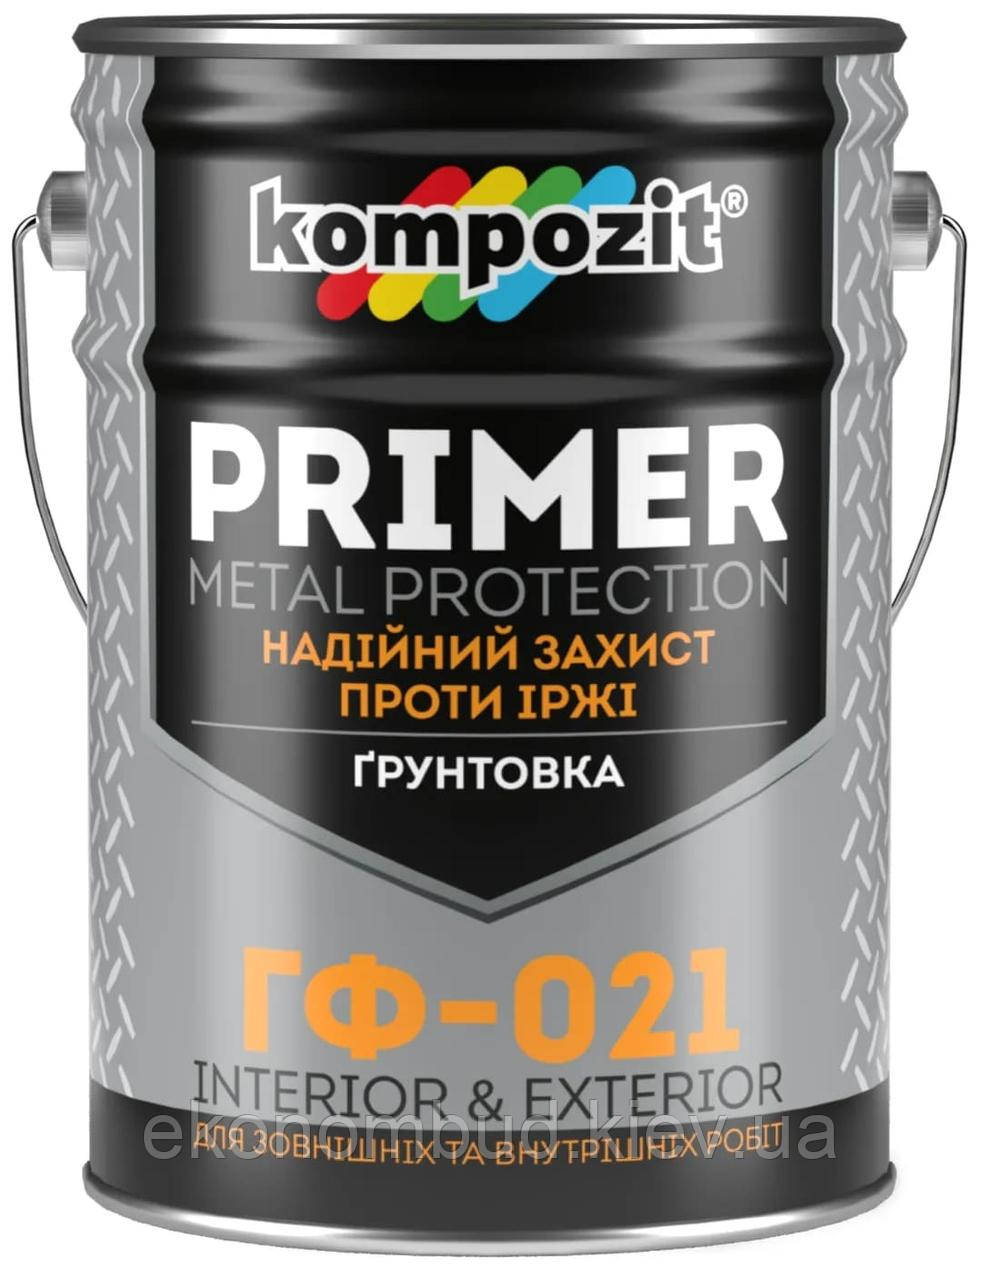 Ґрунтовка ГФ-021 Kompozit® (Колір: Світло-сірий, Фасування: 12 кг)